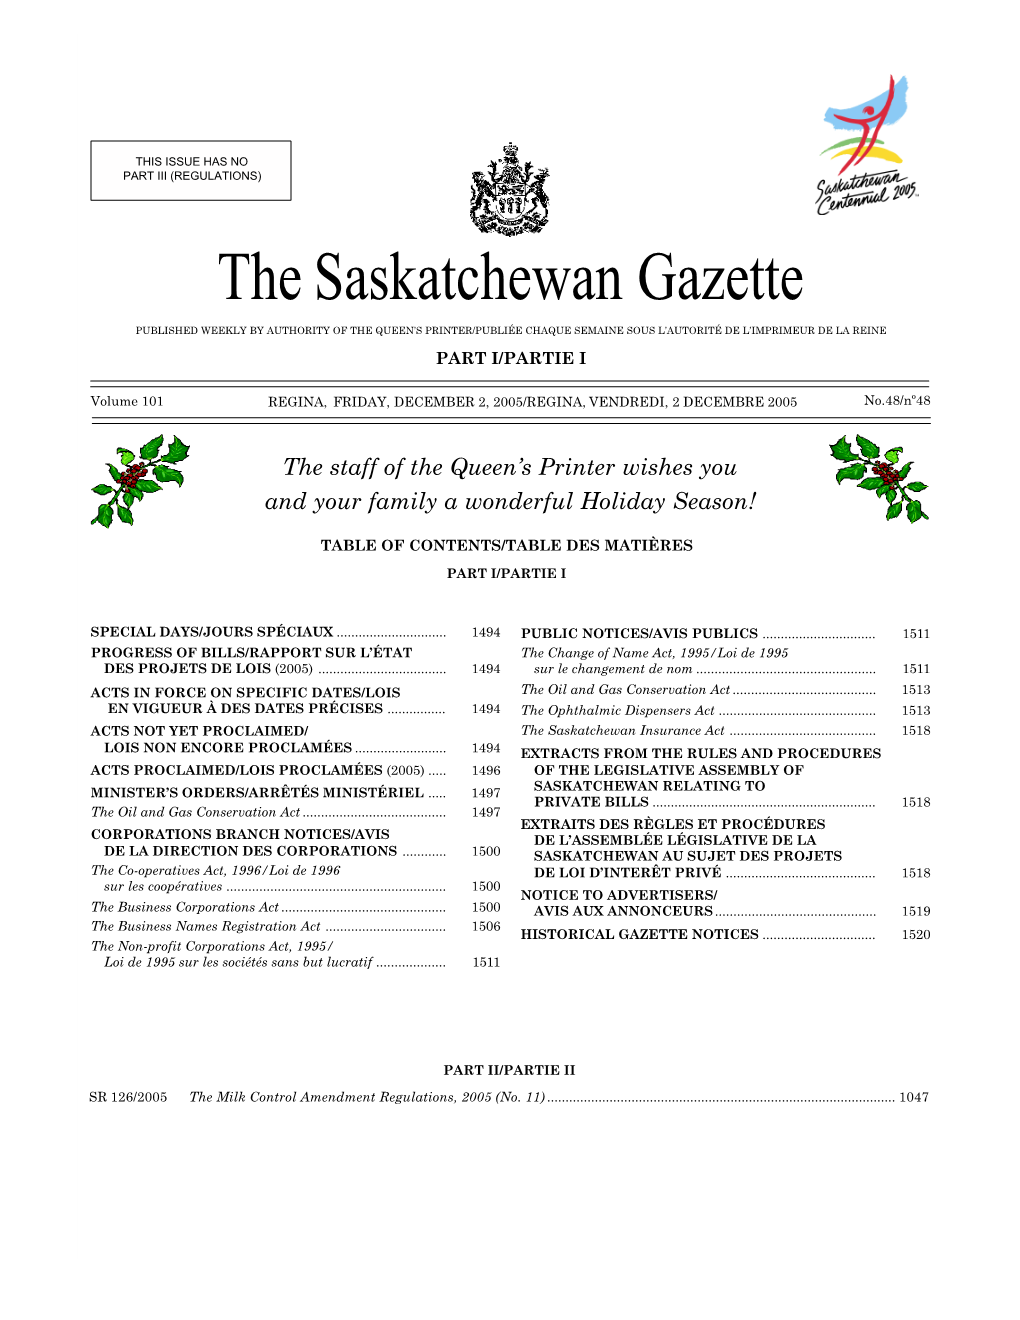 Sask Gazette, Part I, Dec 2, 2005